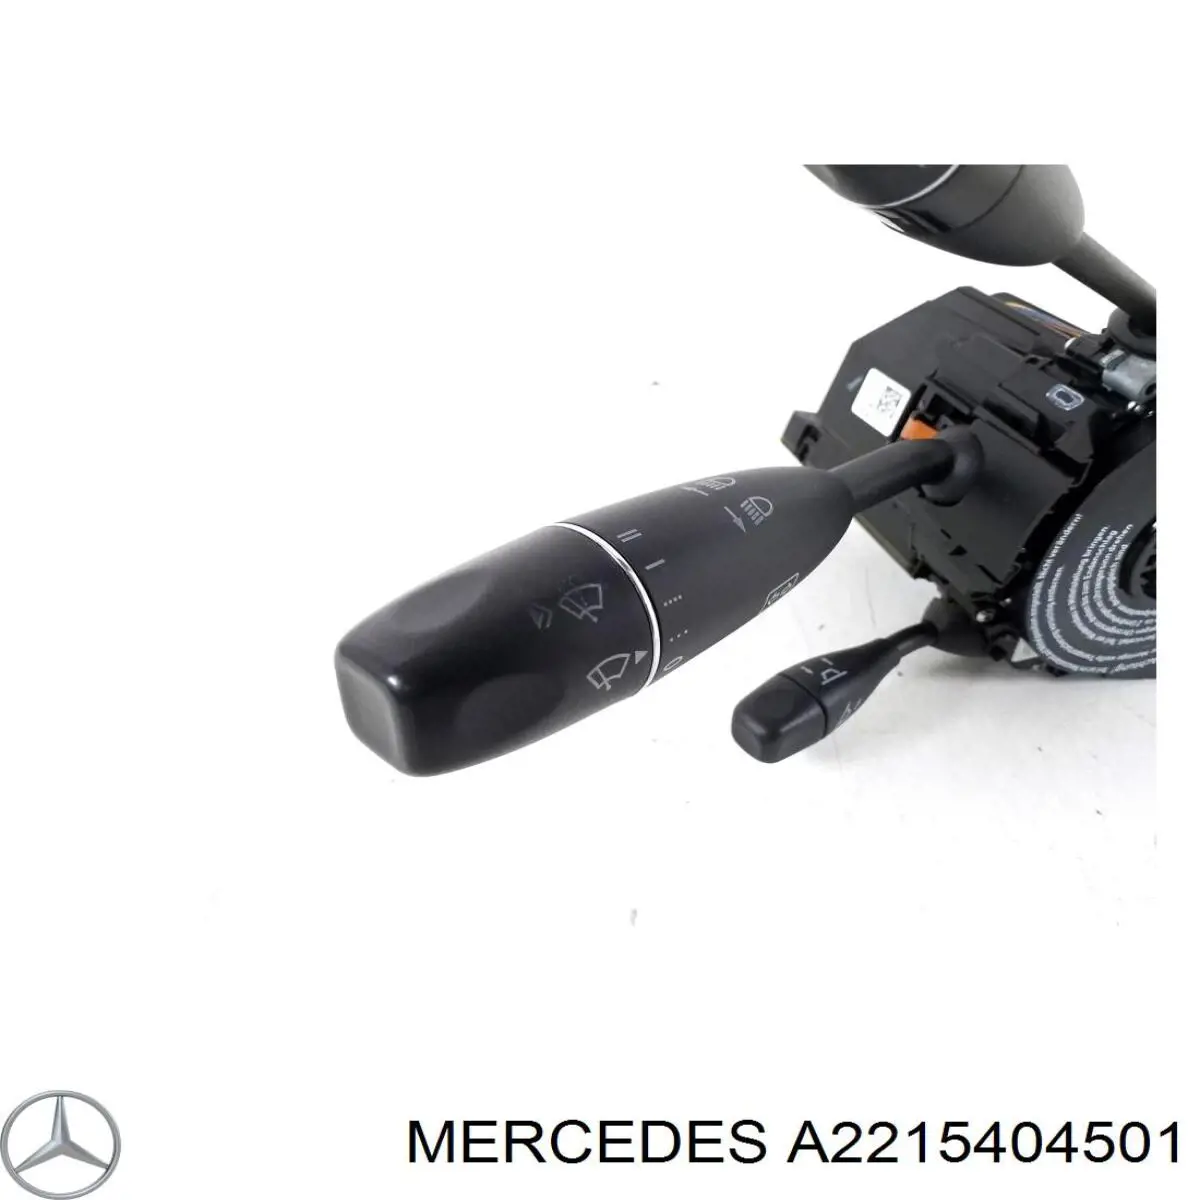 A2215404501 Mercedes comutador instalado na coluna da direção, montado